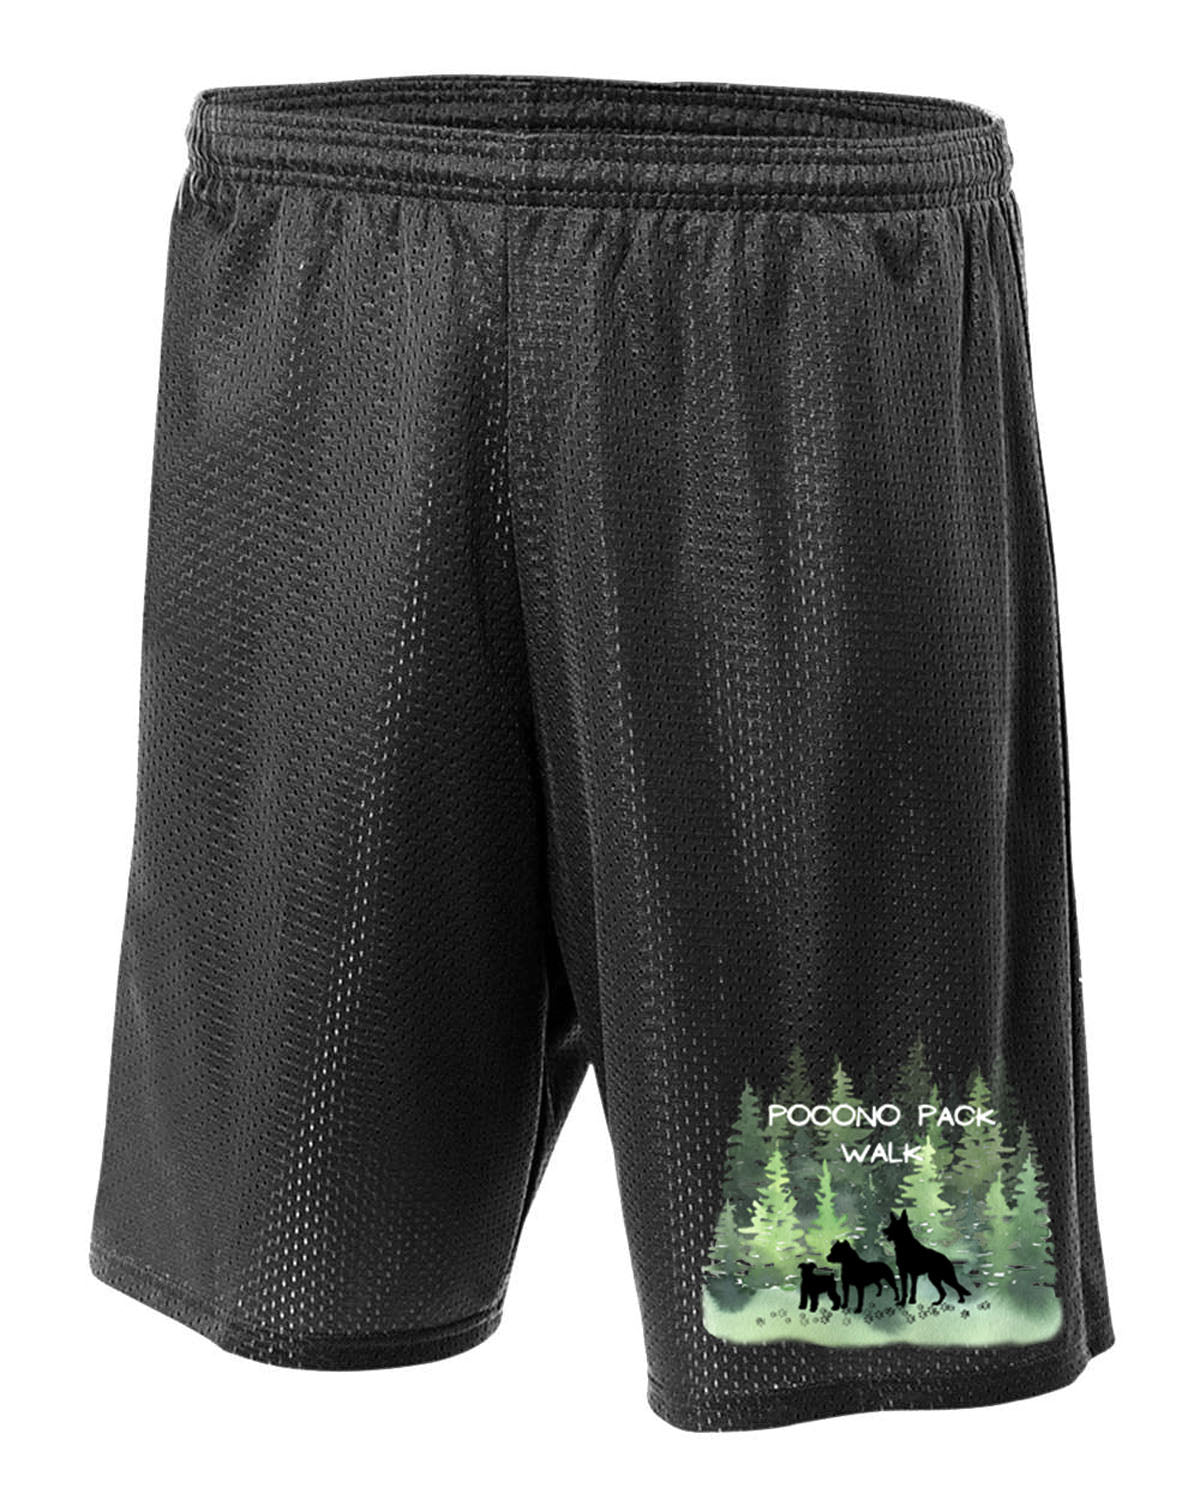 Pocono Pack Design 1 Mesh Shorts